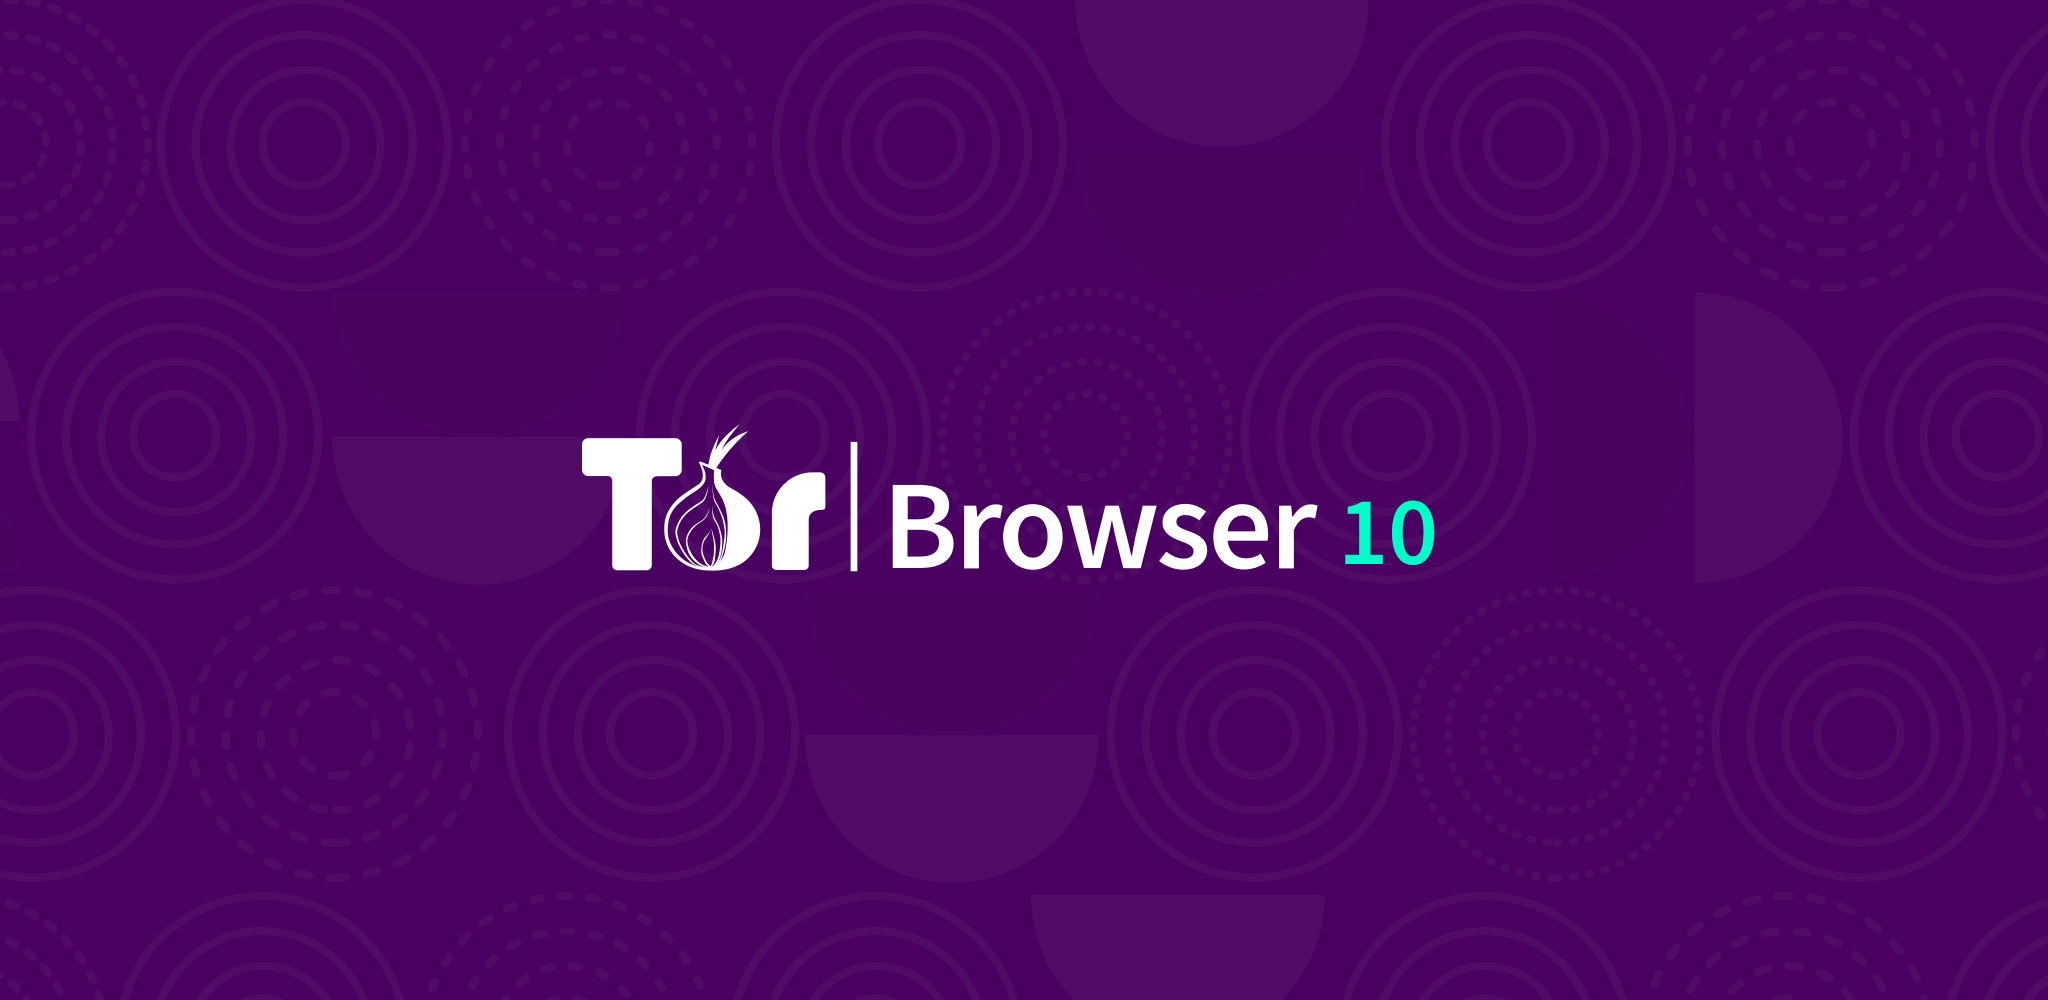 Устройство tor browser мега скачать браузер тор официальный сайт скачать бесплатно mega